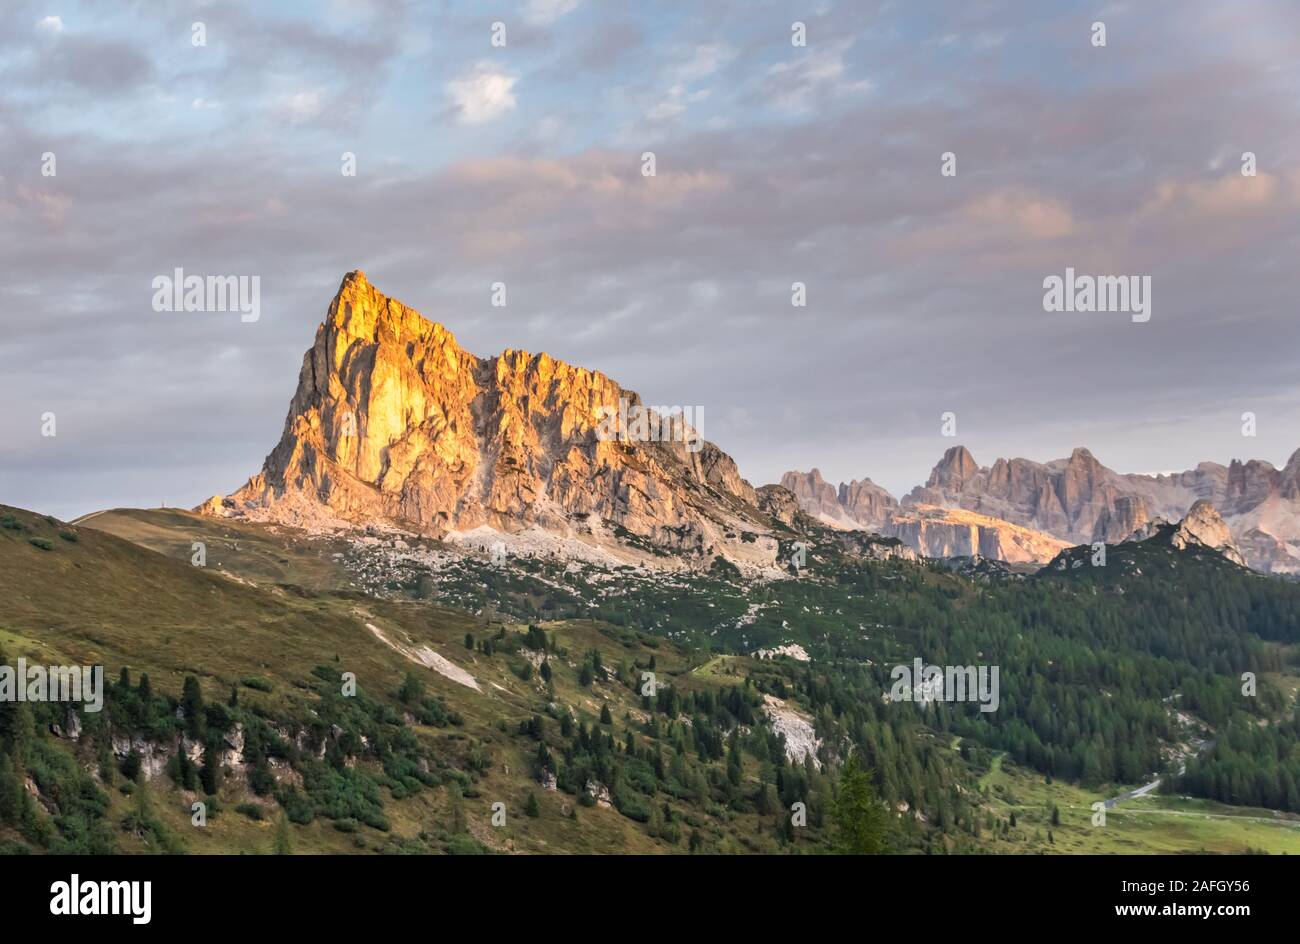 Sommer Berglandschaft in der Nähe von Cinque Torri Dolomiten Alpen Italien Stockfoto